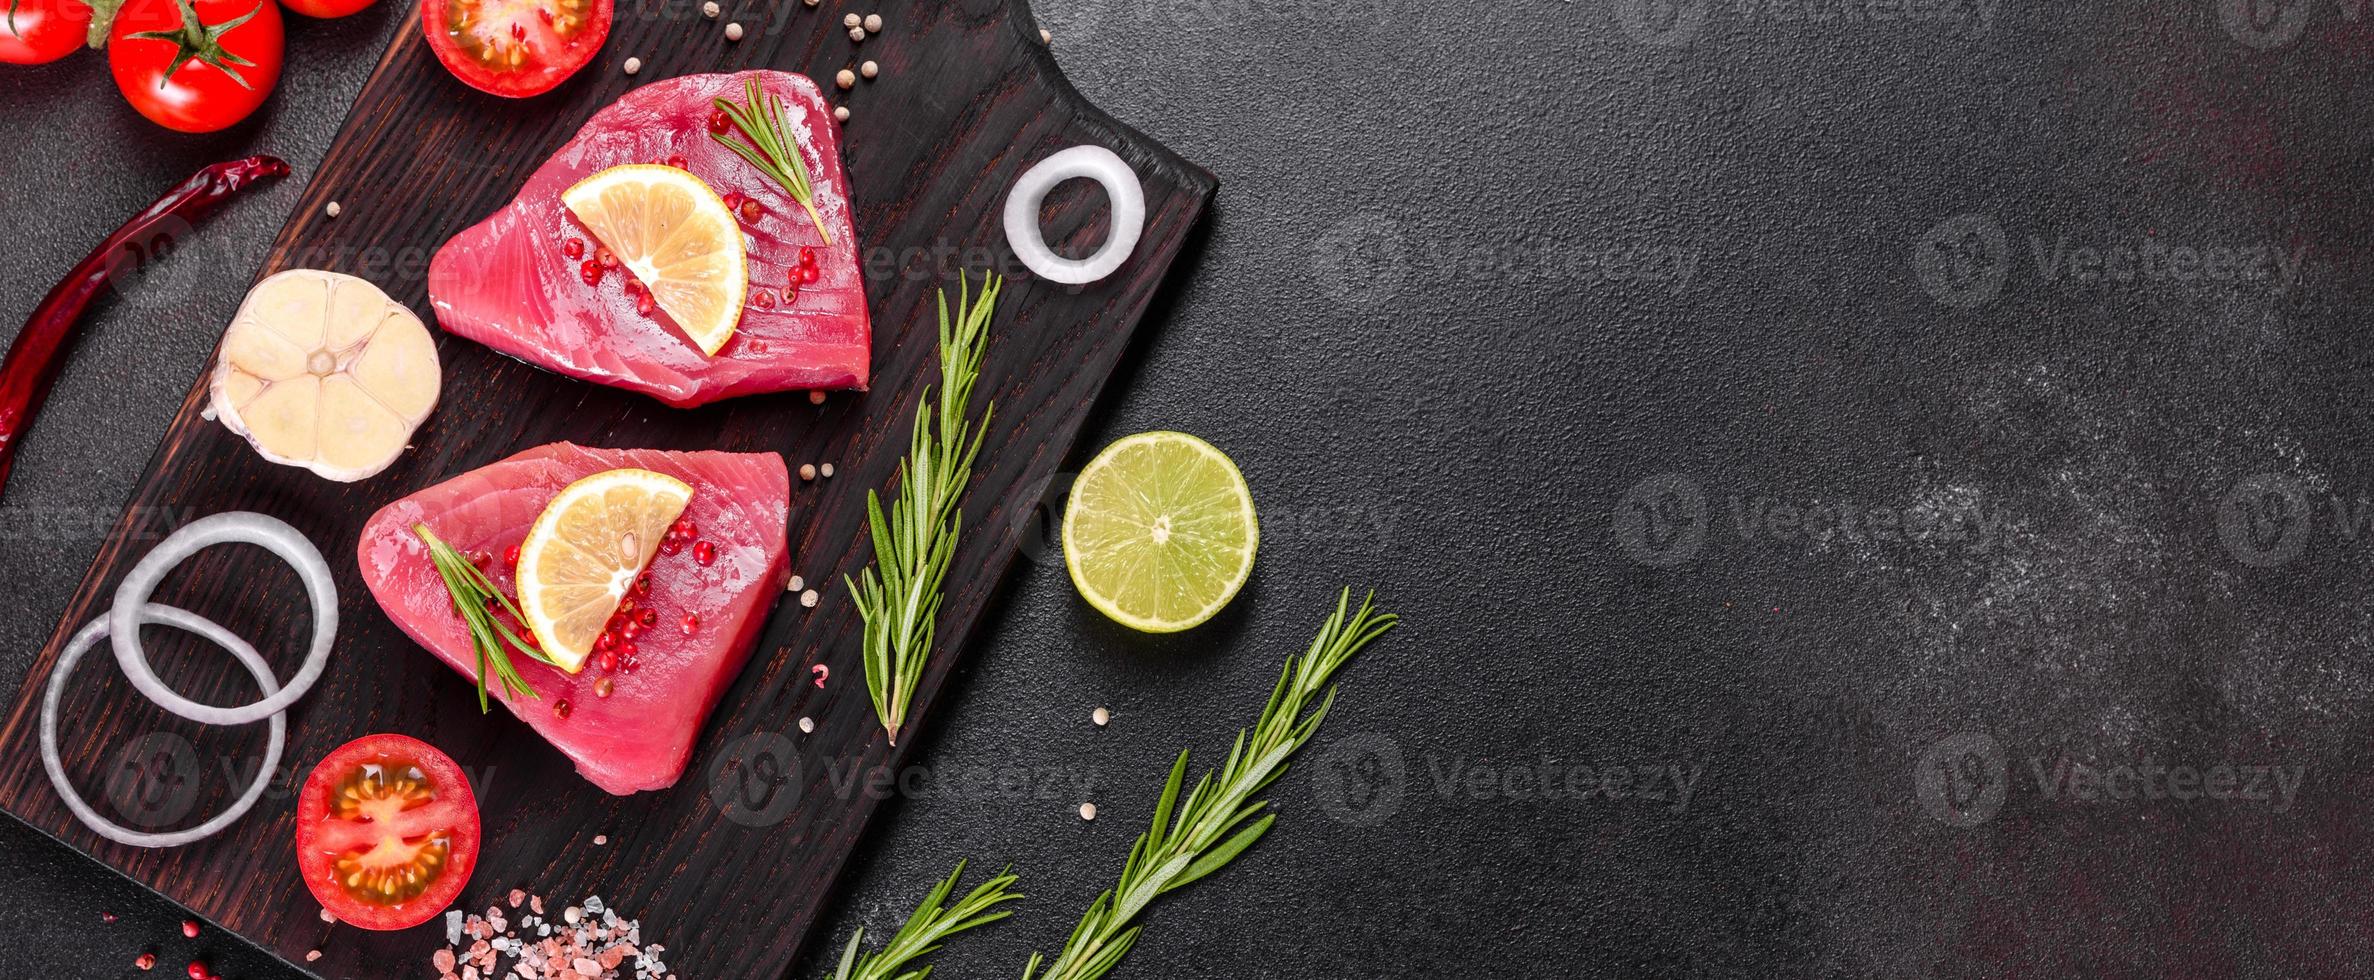 färsk tonfiskfilé med kryddor och örter på en svart bakgrund foto